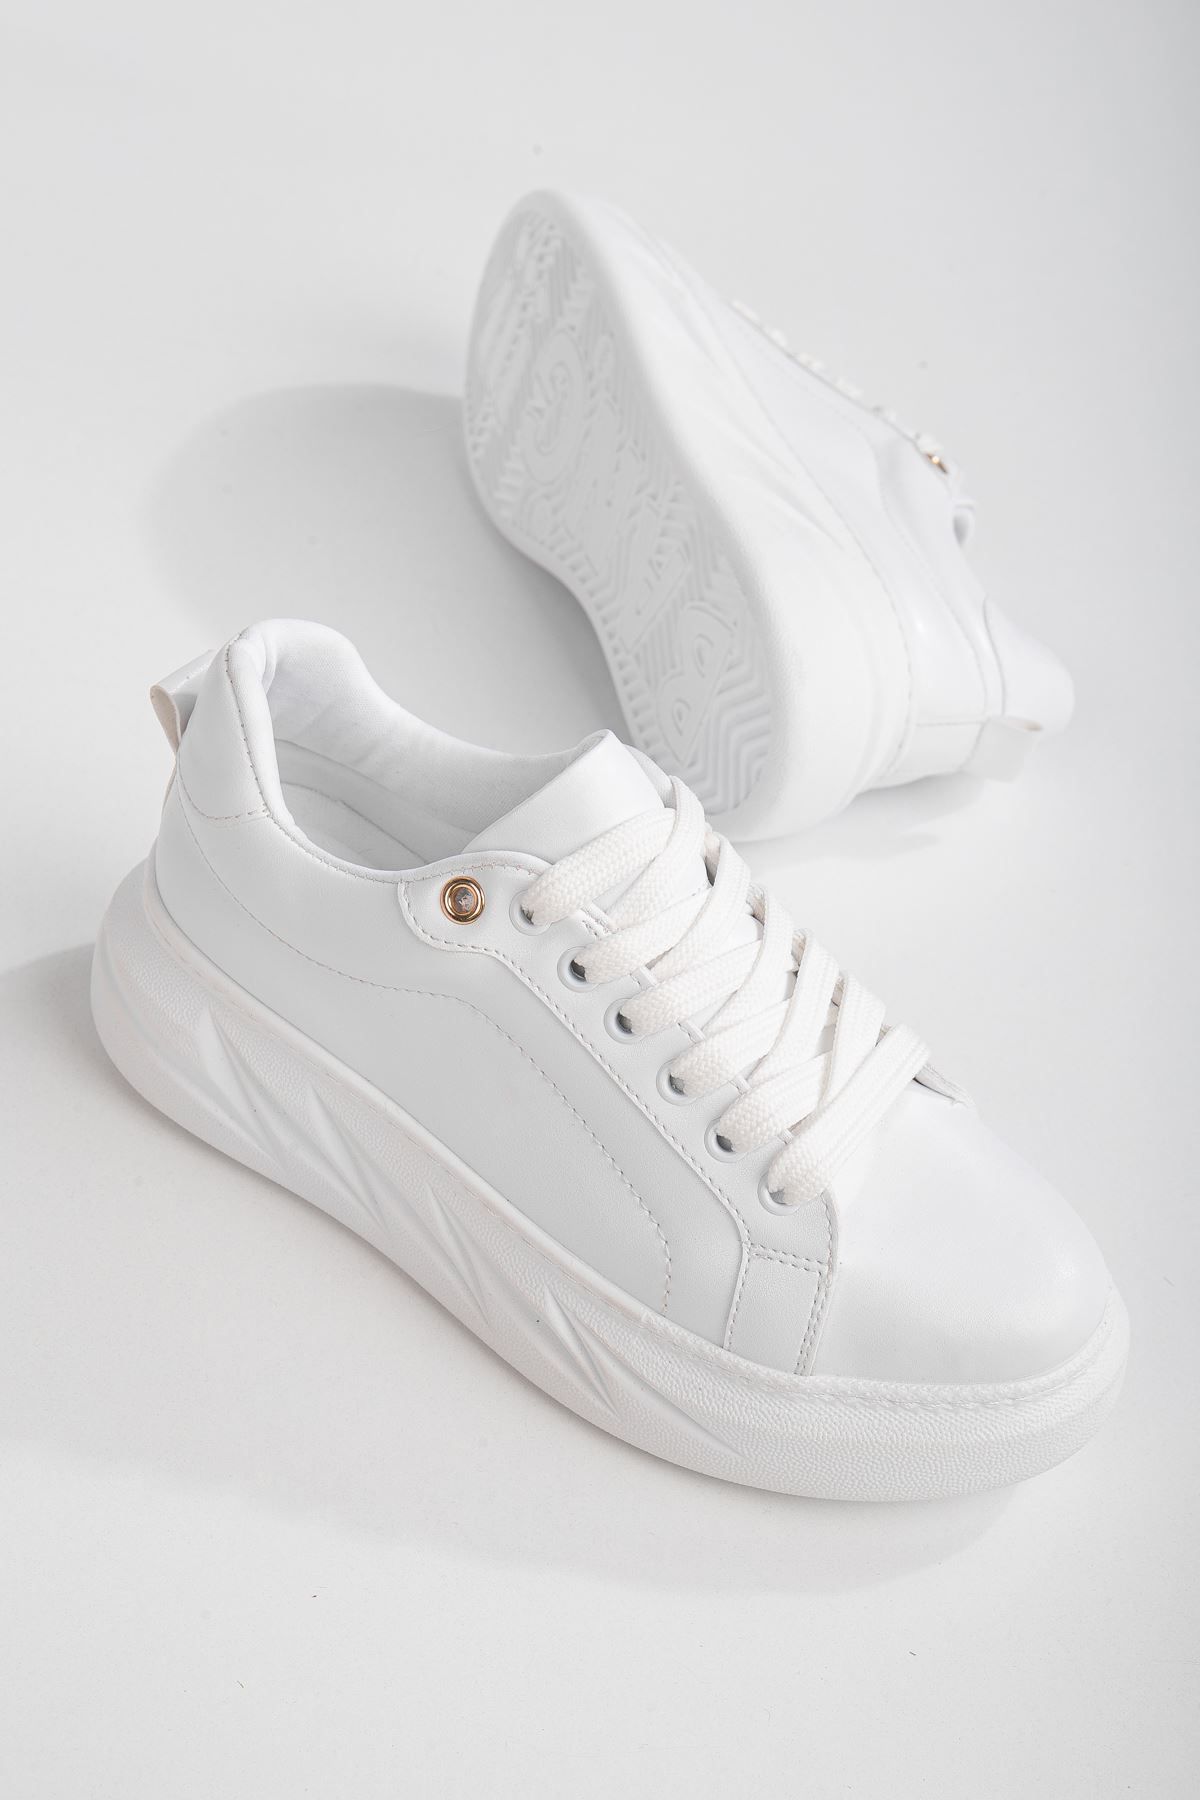 Marsingo Nerina Beyaz Cilt Kalın Tabanlı Detaylı Sneakers